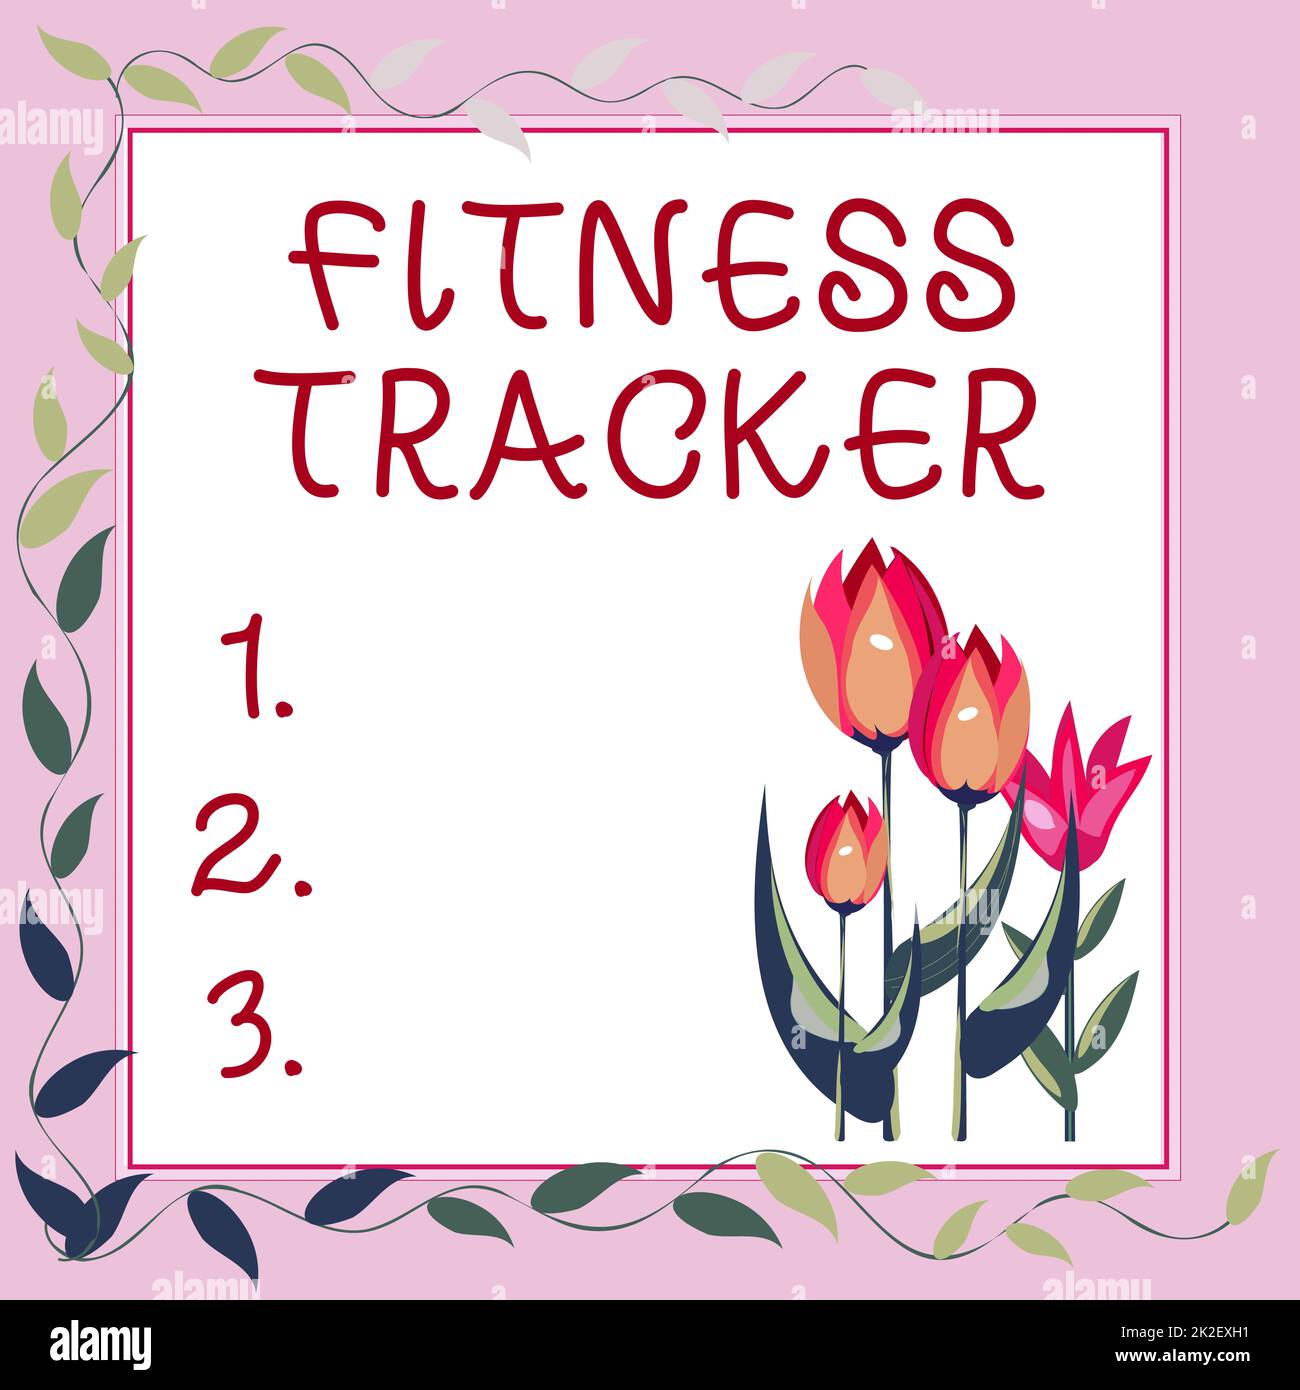 Text mit Inspiration Fitness Tracker. Business-Ideengerät, das die tägliche körperliche Aktivität einer Person aufzeichnet Rahmen dekoriert mit farbenfrohen Blumen und Blattwerk harmonisch angeordnet. Stockfoto